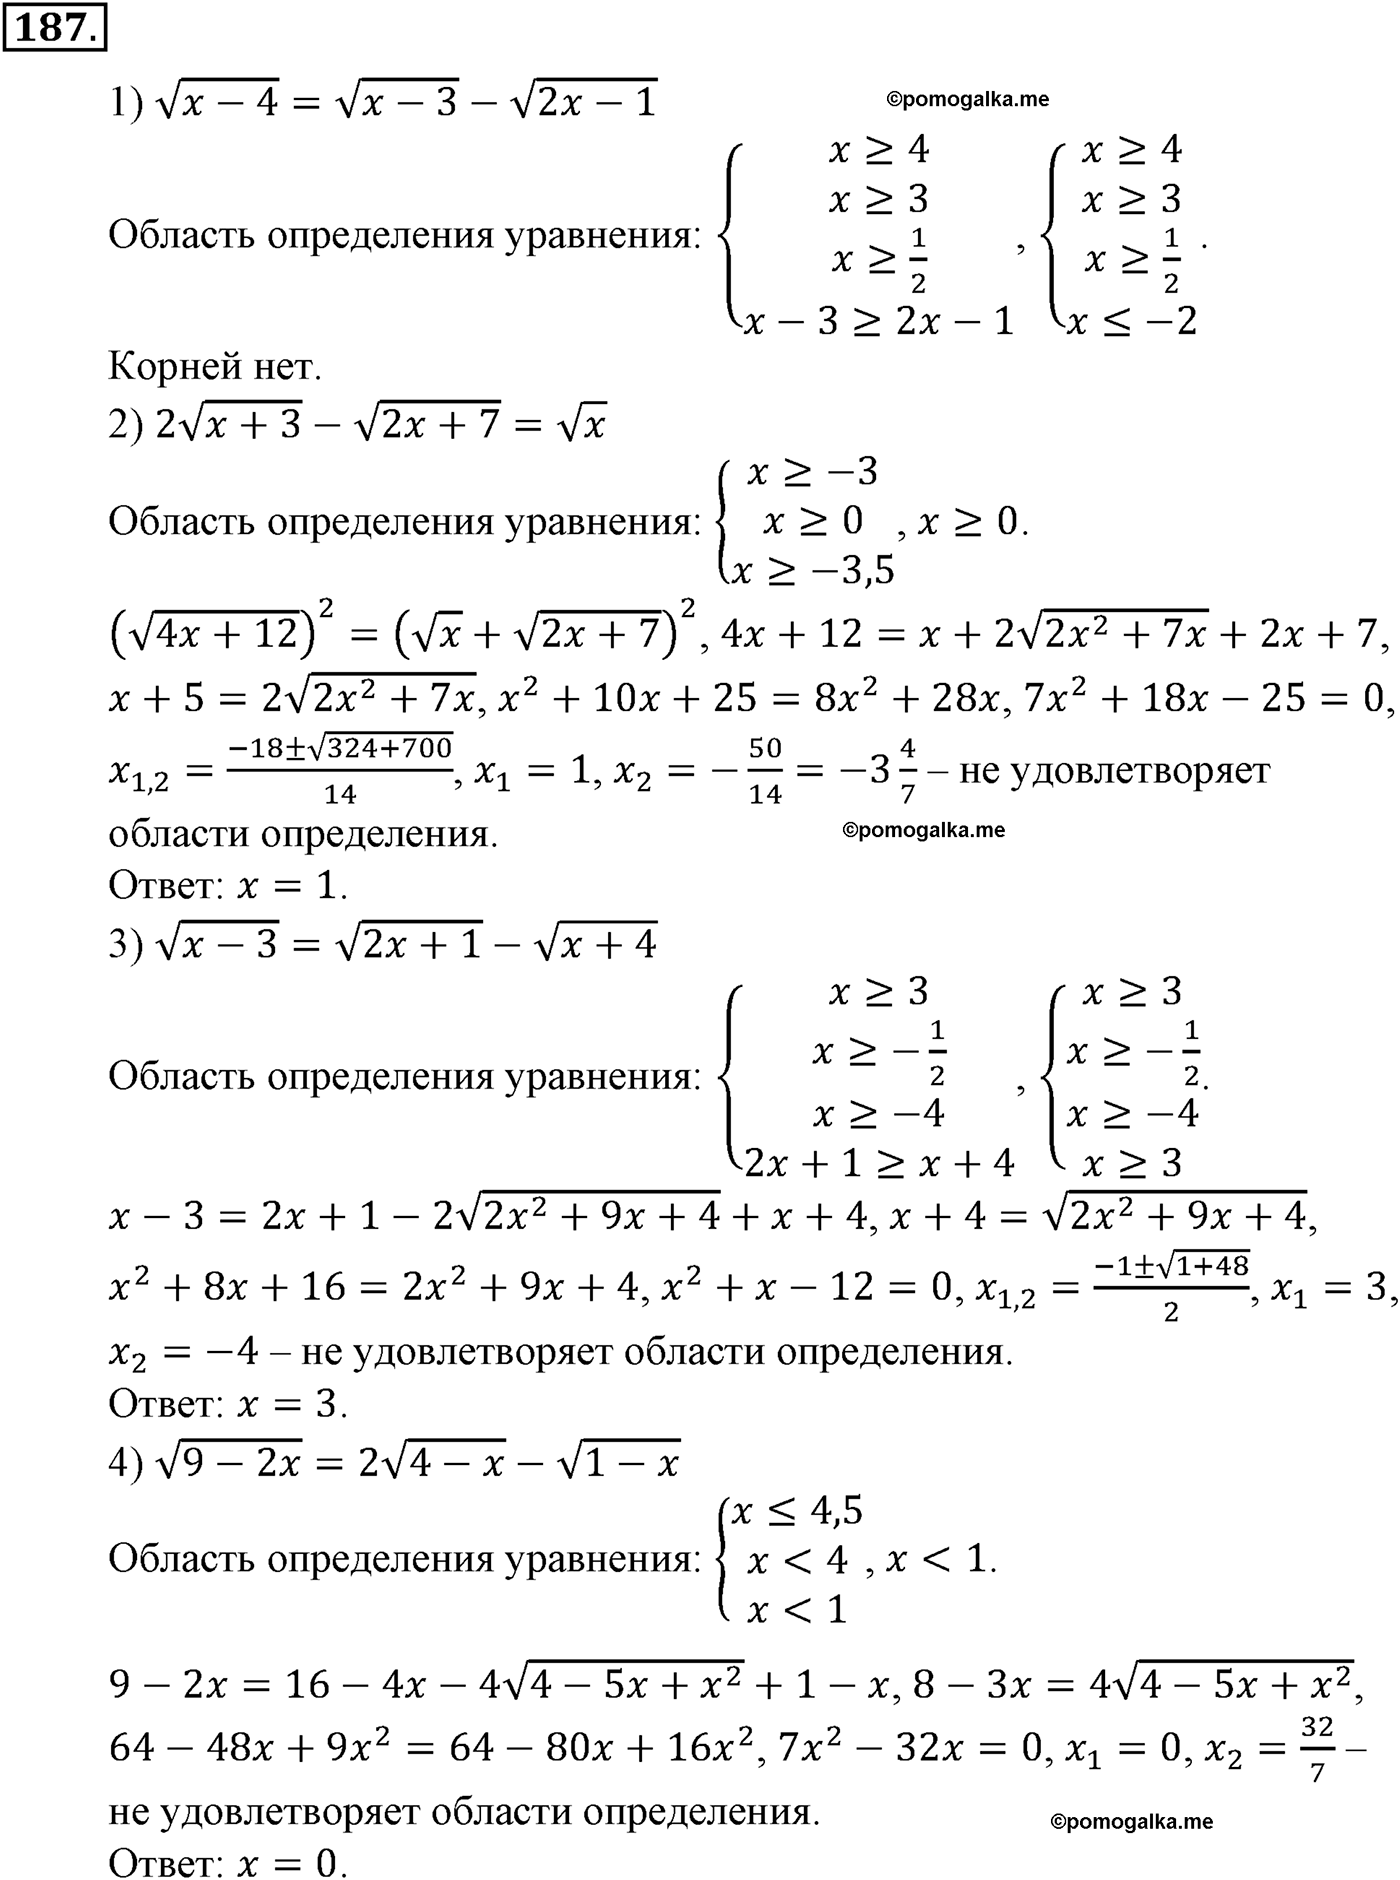 разбор задачи №187 по алгебре за 10-11 класс из учебника Алимова, Колягина